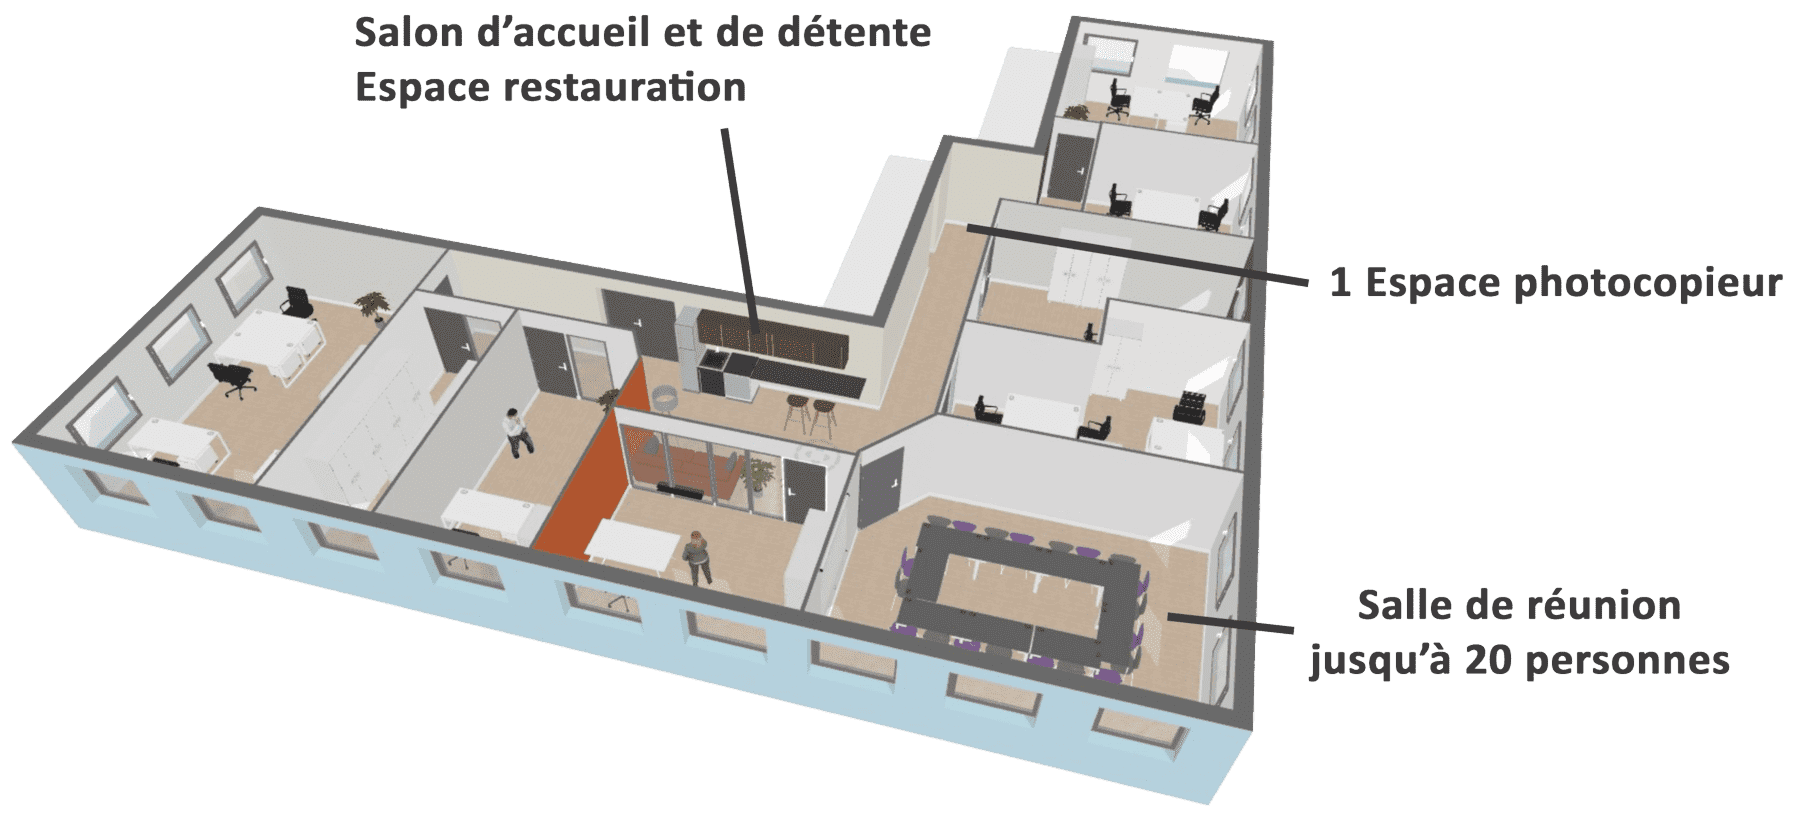 Plan des espaces 3D